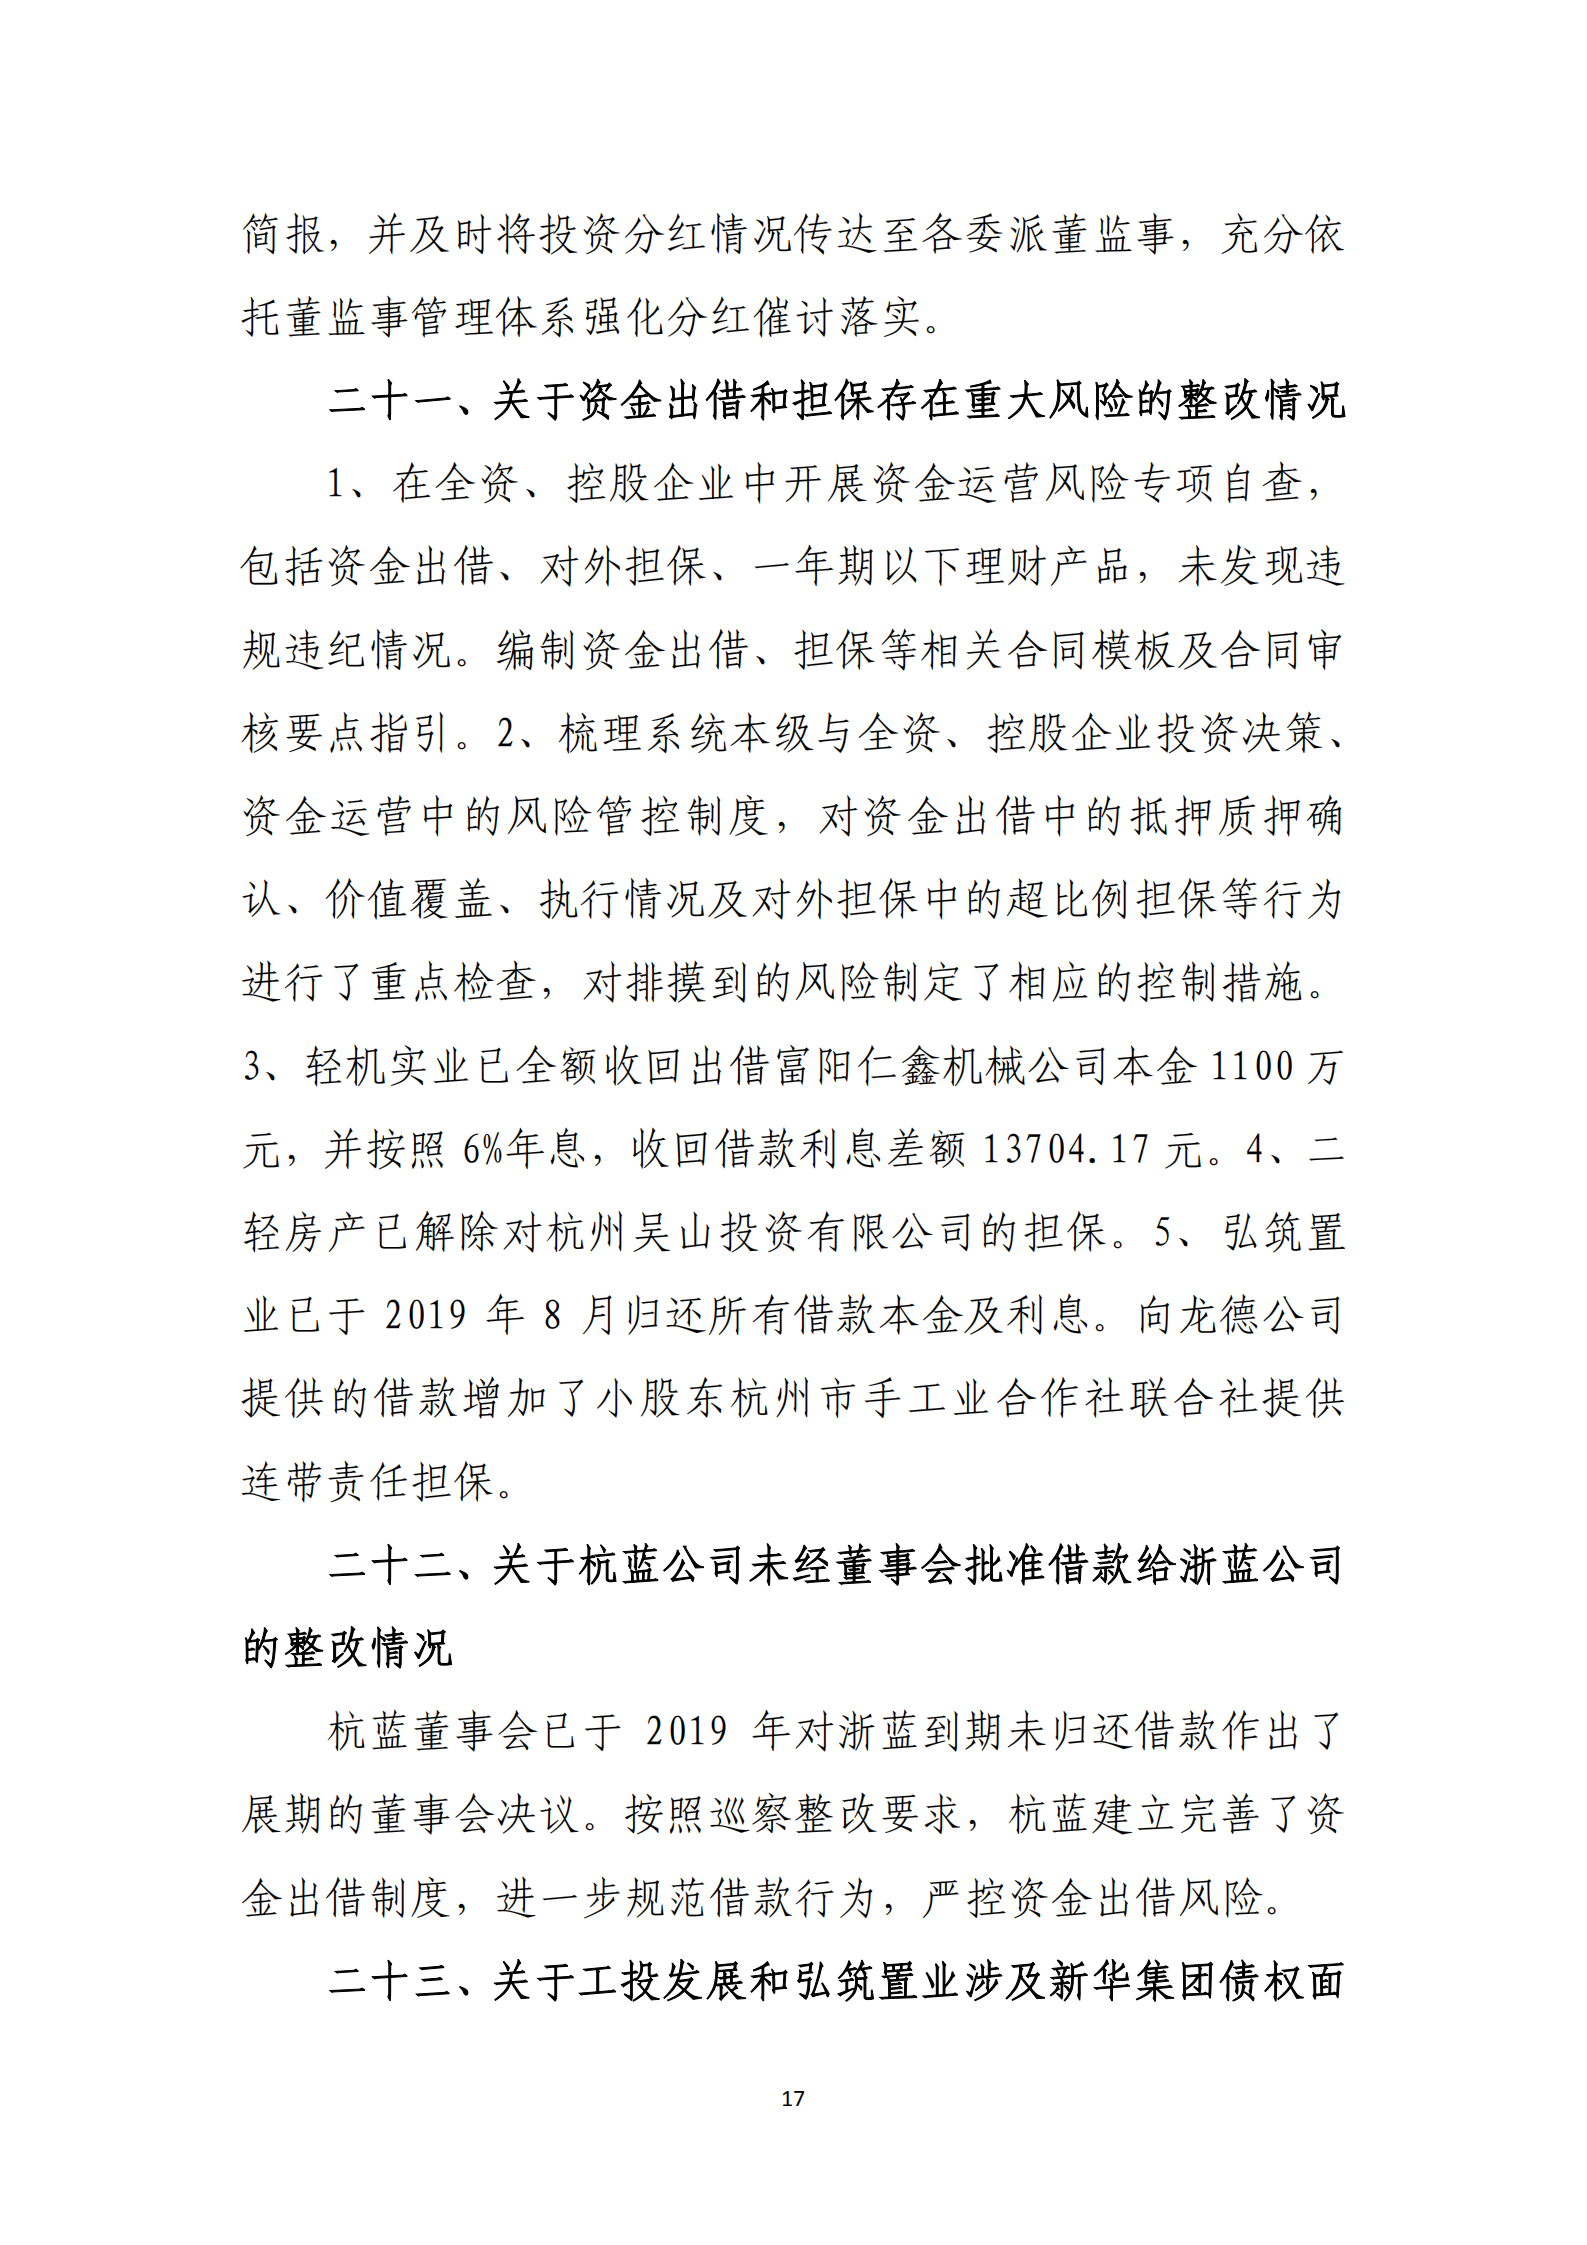 【体育365官方网站】中国有限公司党委关于巡察整改情况的通报_16.png